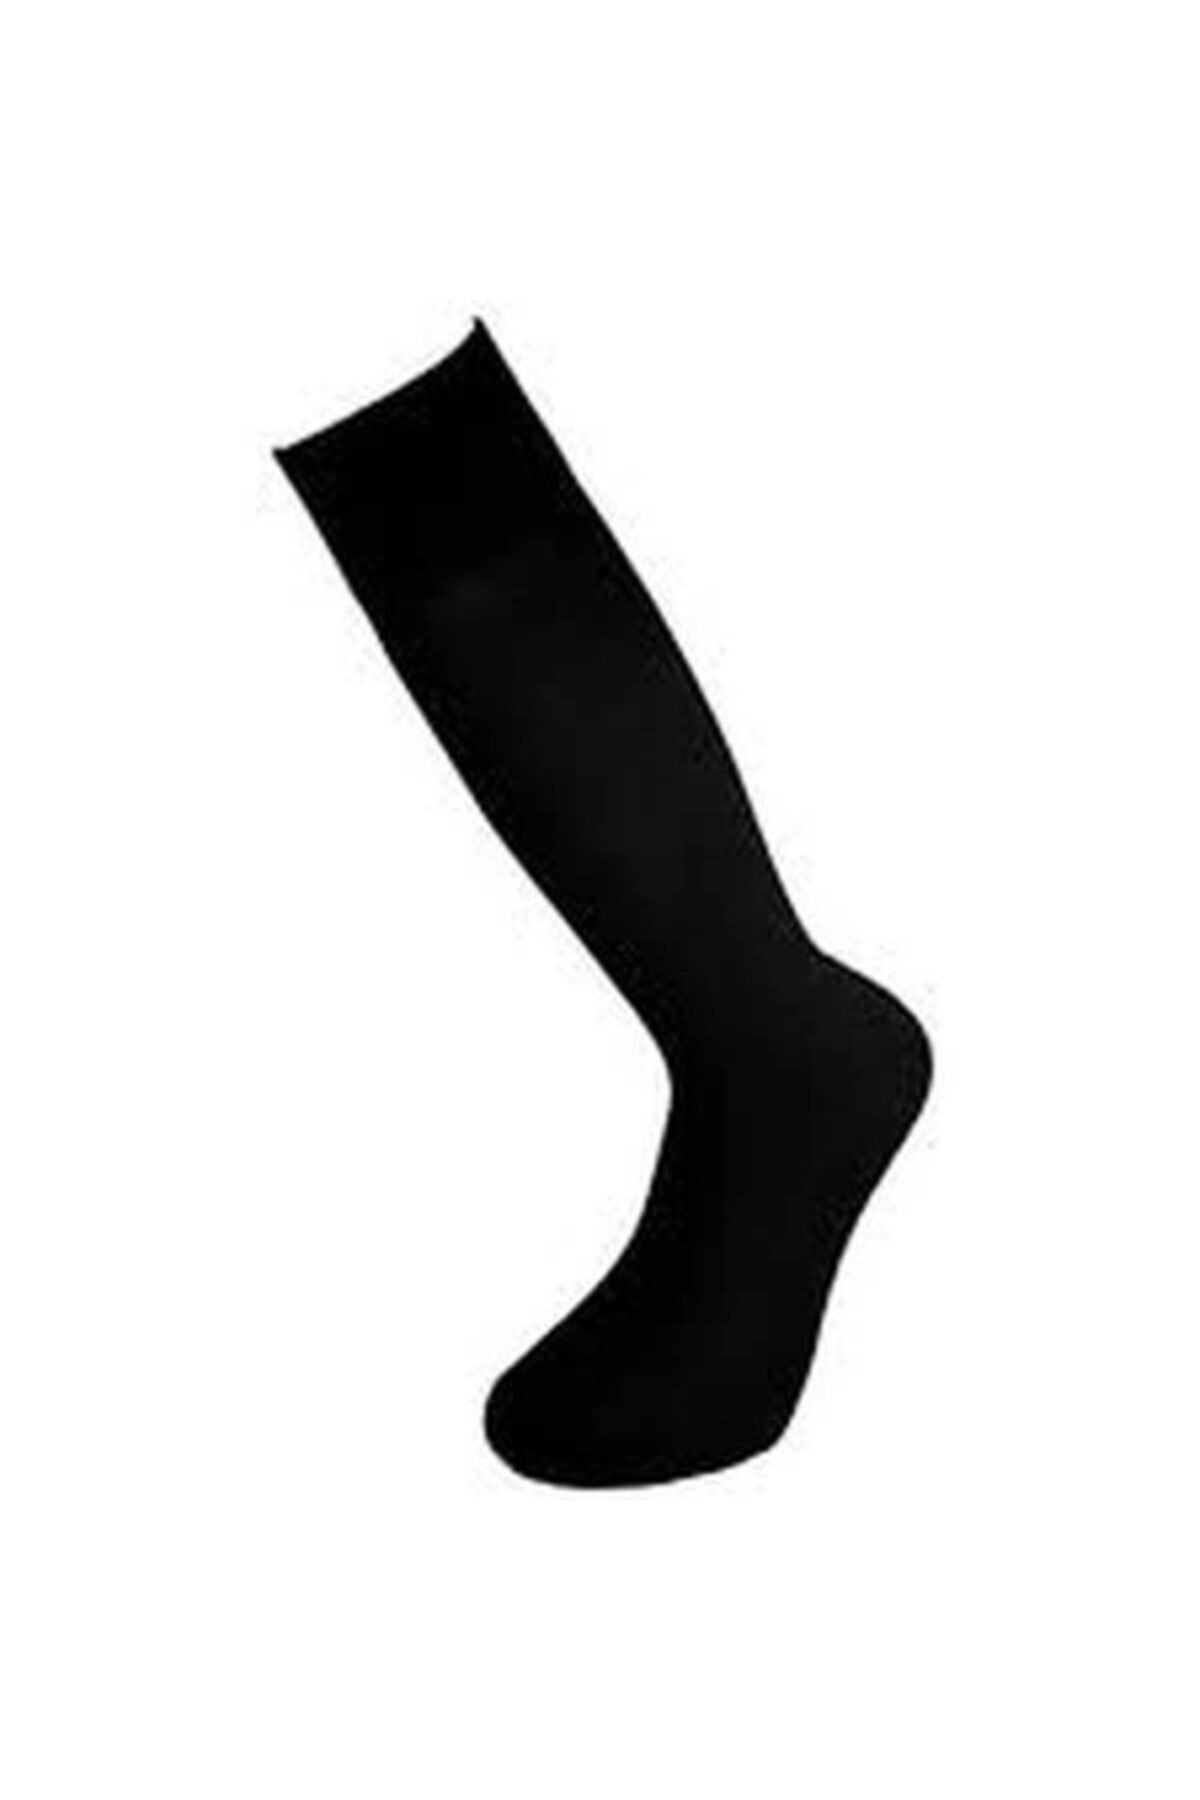 İpek Mevsimlik Diz Altı Çorap 6 Lı Siyah,füme Kahve